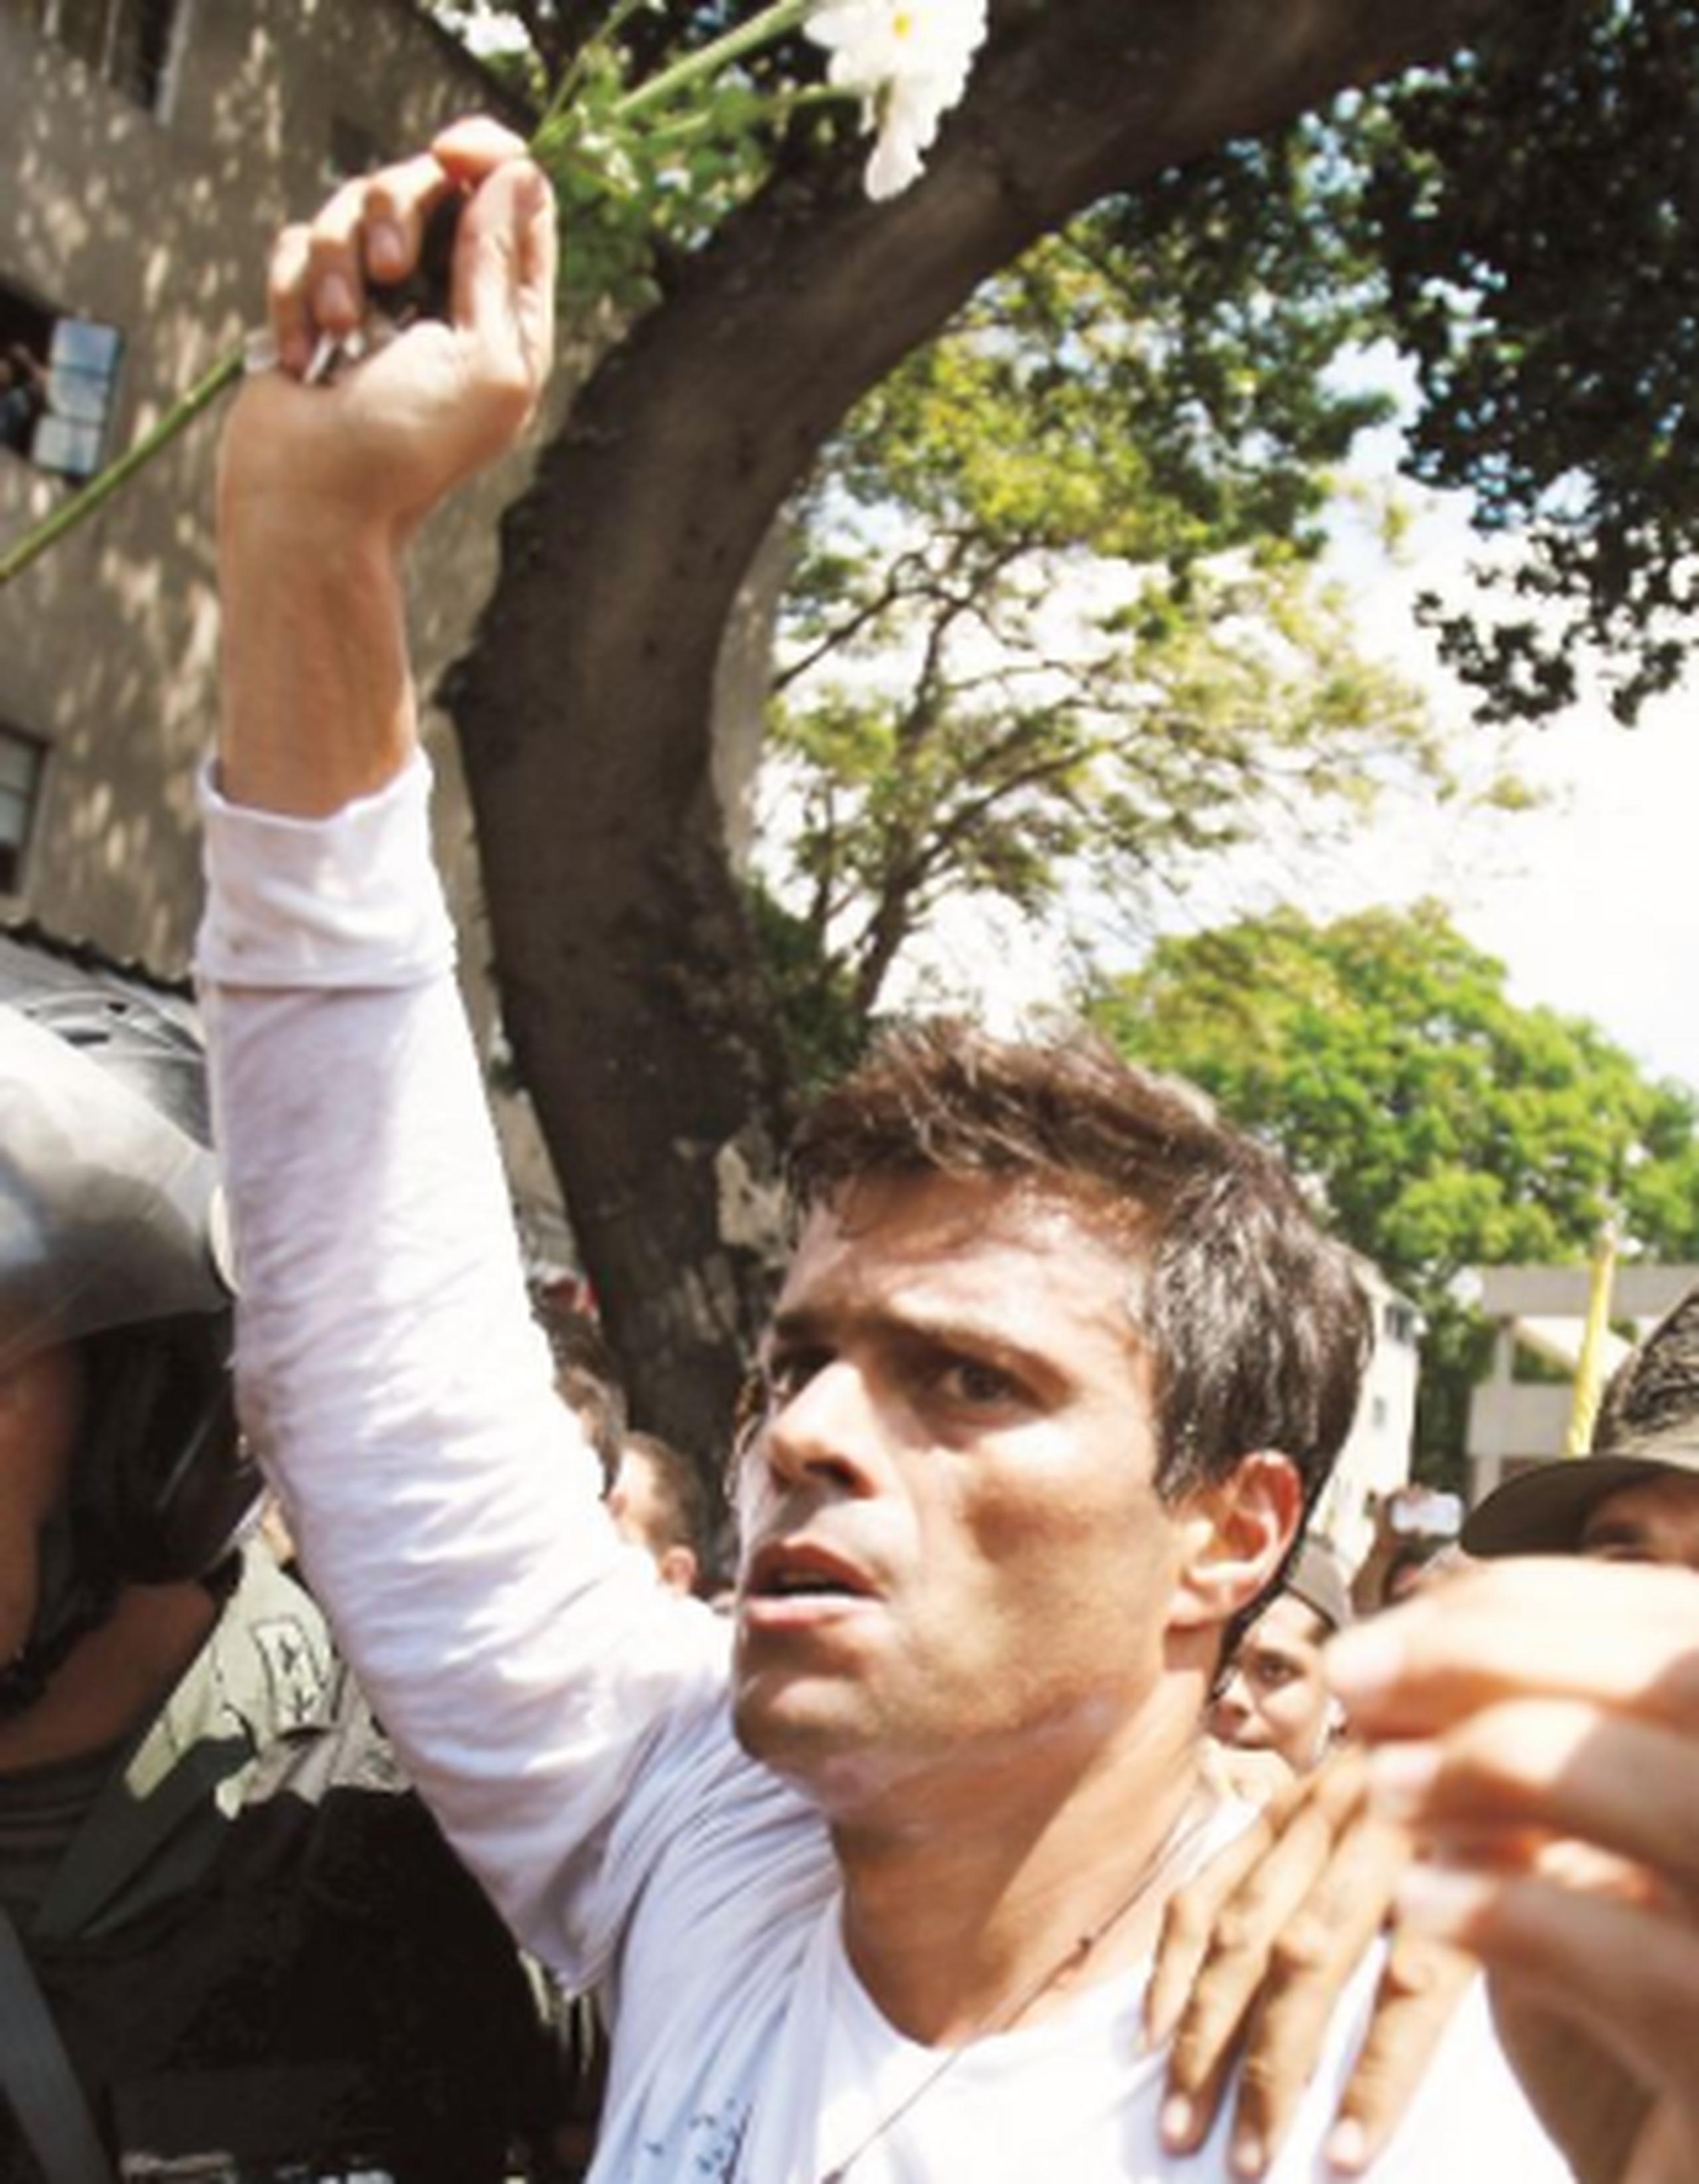 López fue sentenciado a casi 14 años de prisión por promover protestas en Caracas que dejaron tres muertos y varias decenas de heridos y detenidos. (AP)